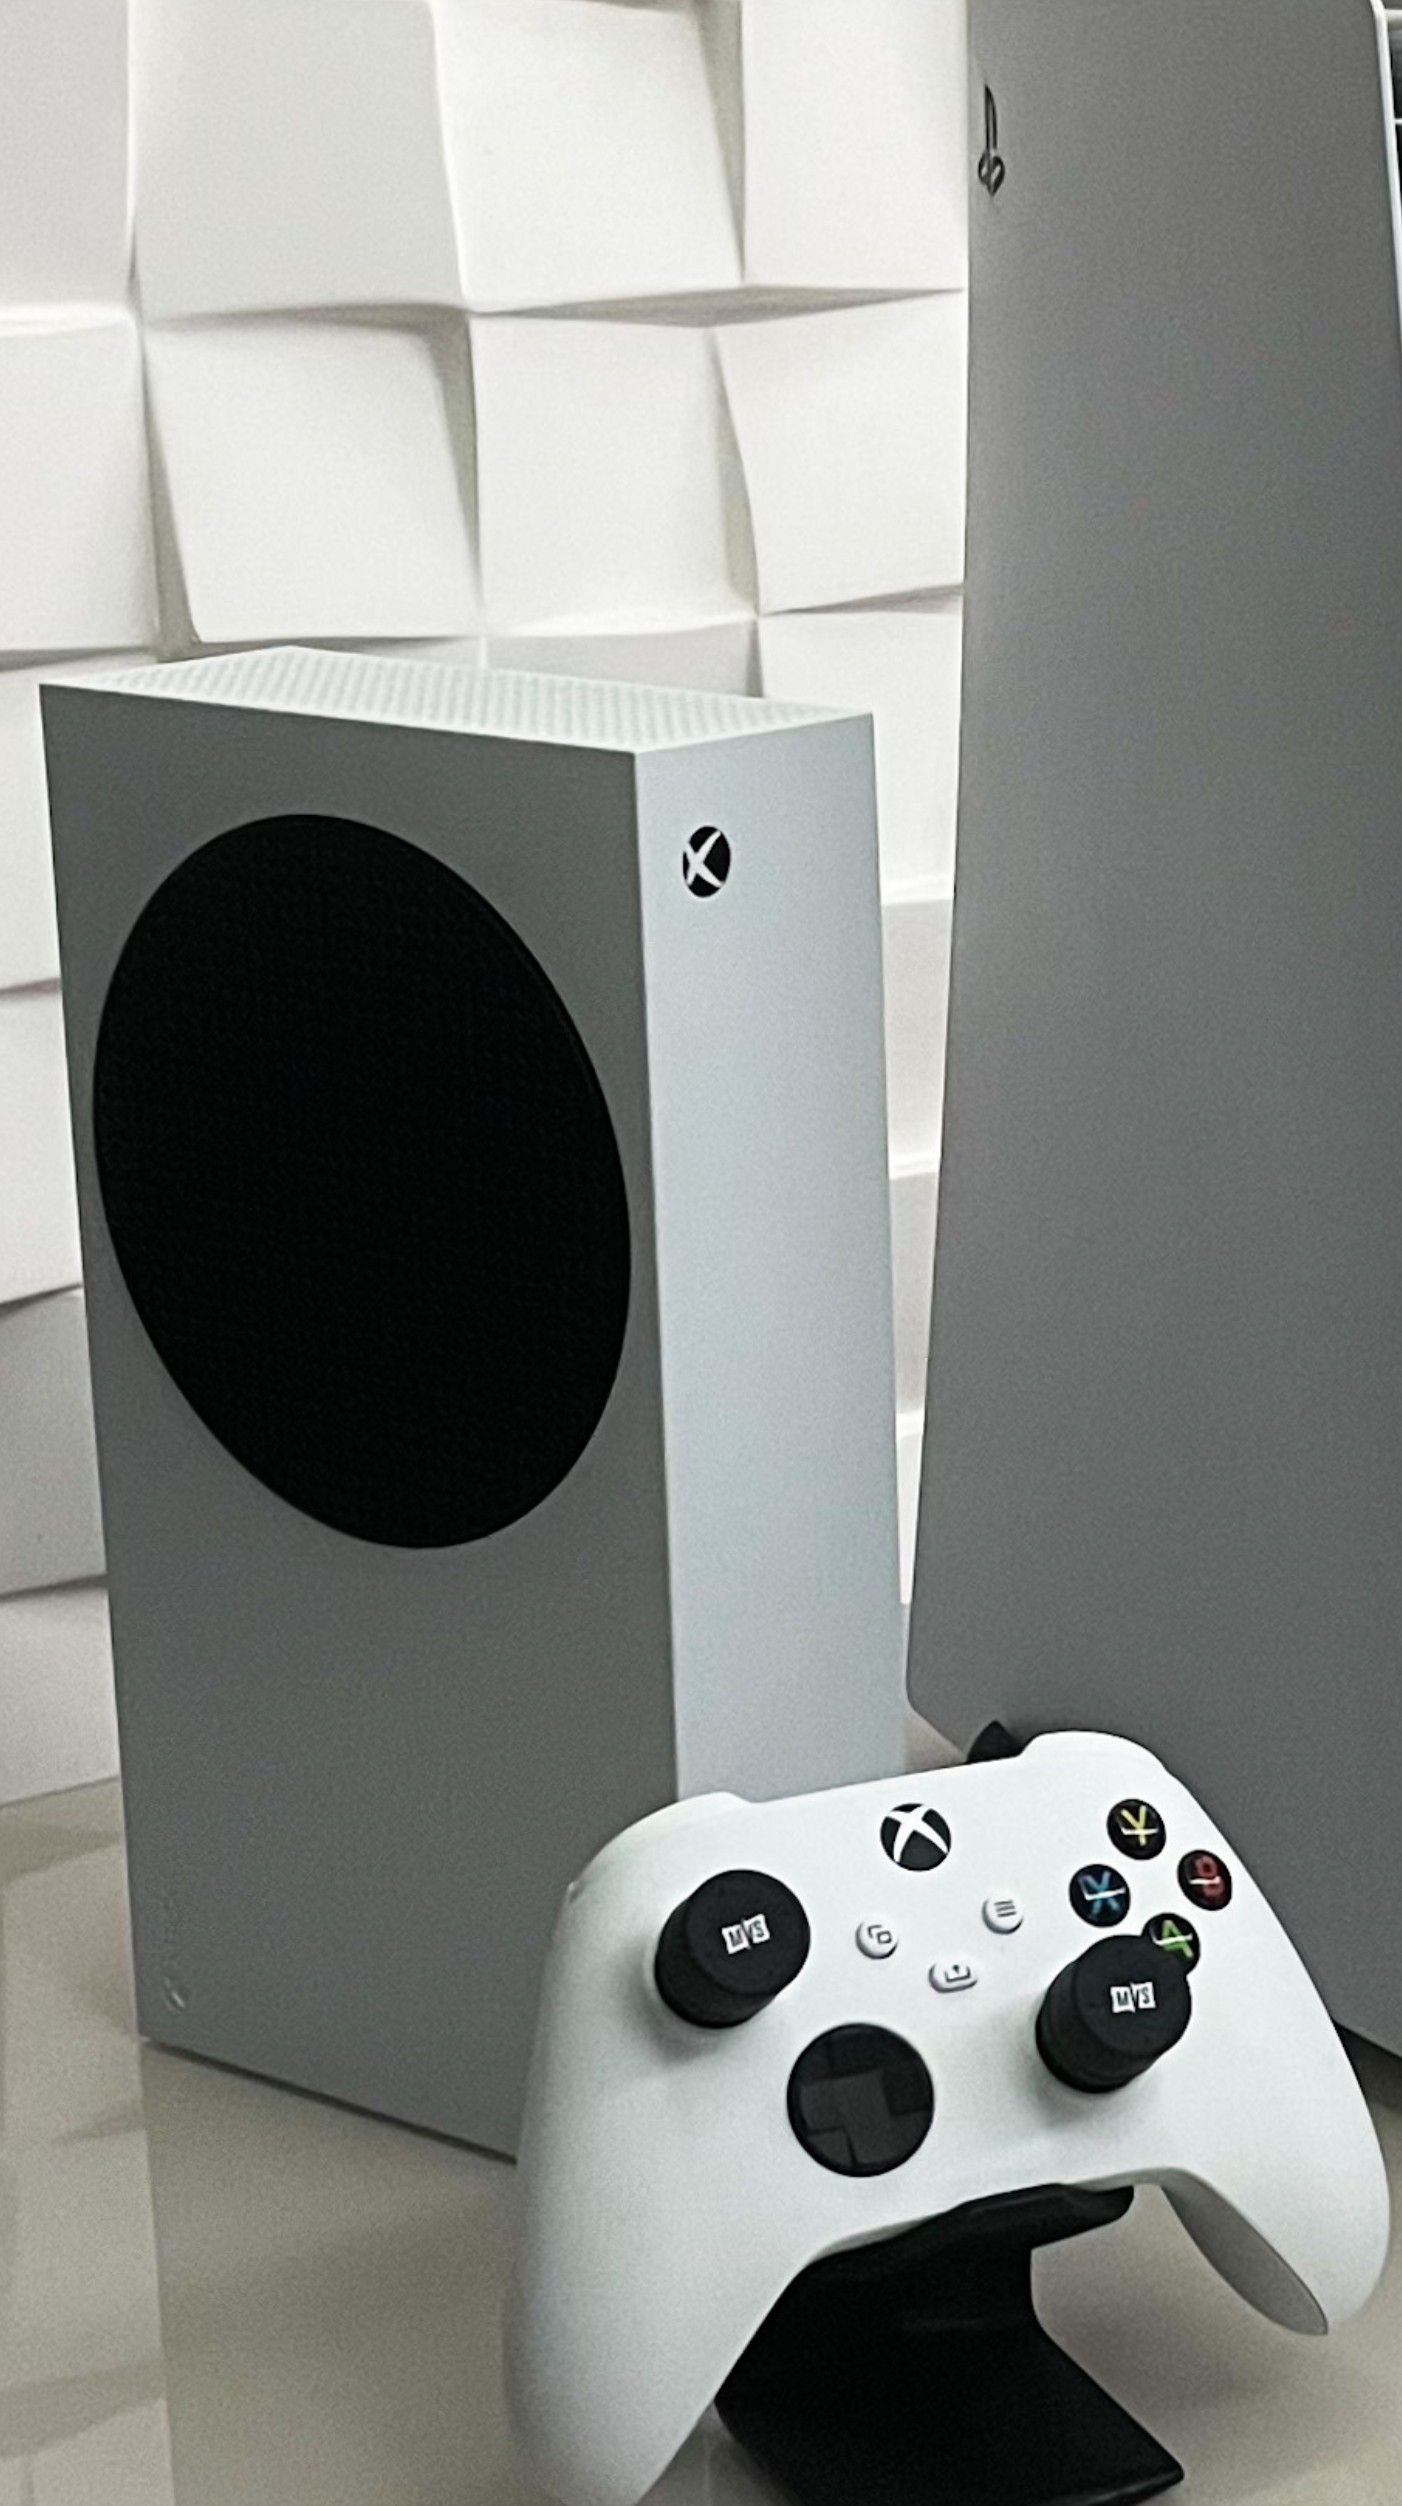 Xbox Series S: veja 3 motivos para comprar (e outros 3 para não comprar)